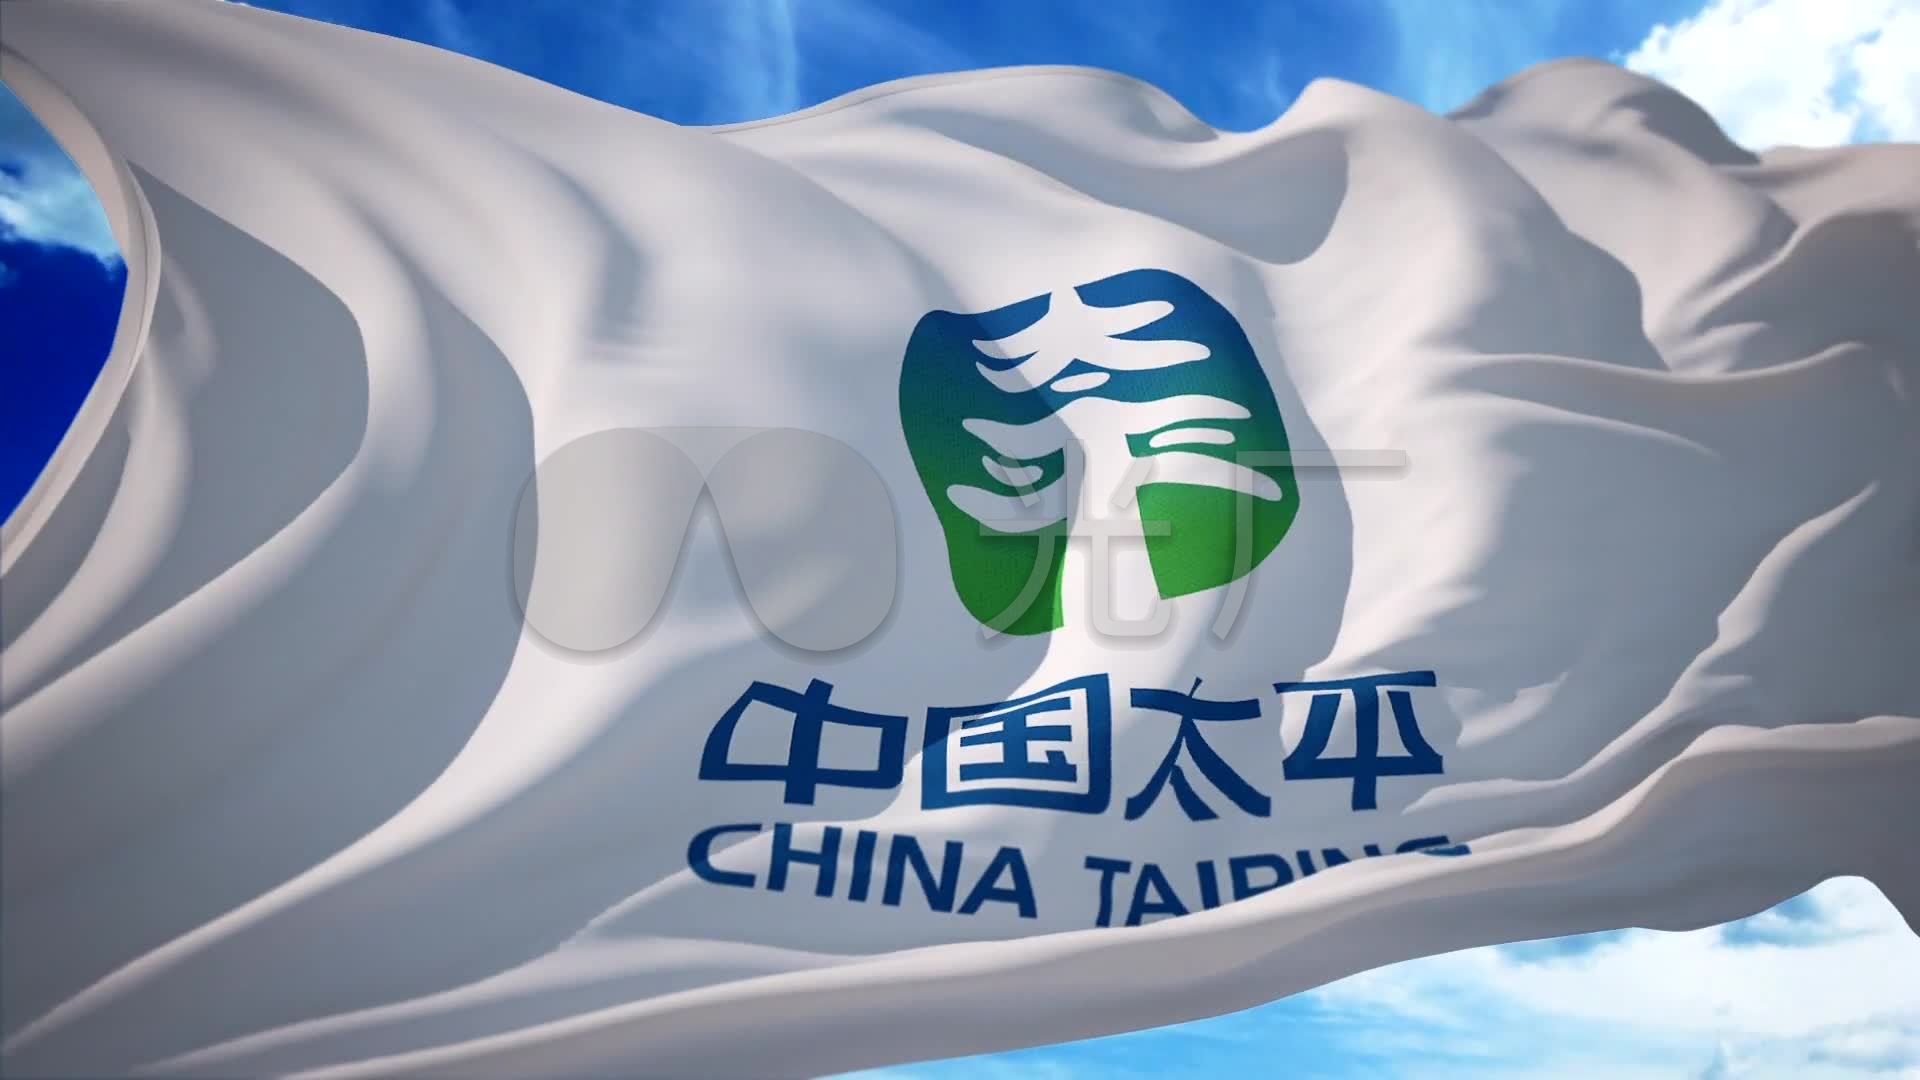 太平保险中国太平保险logo旗帜飘扬1